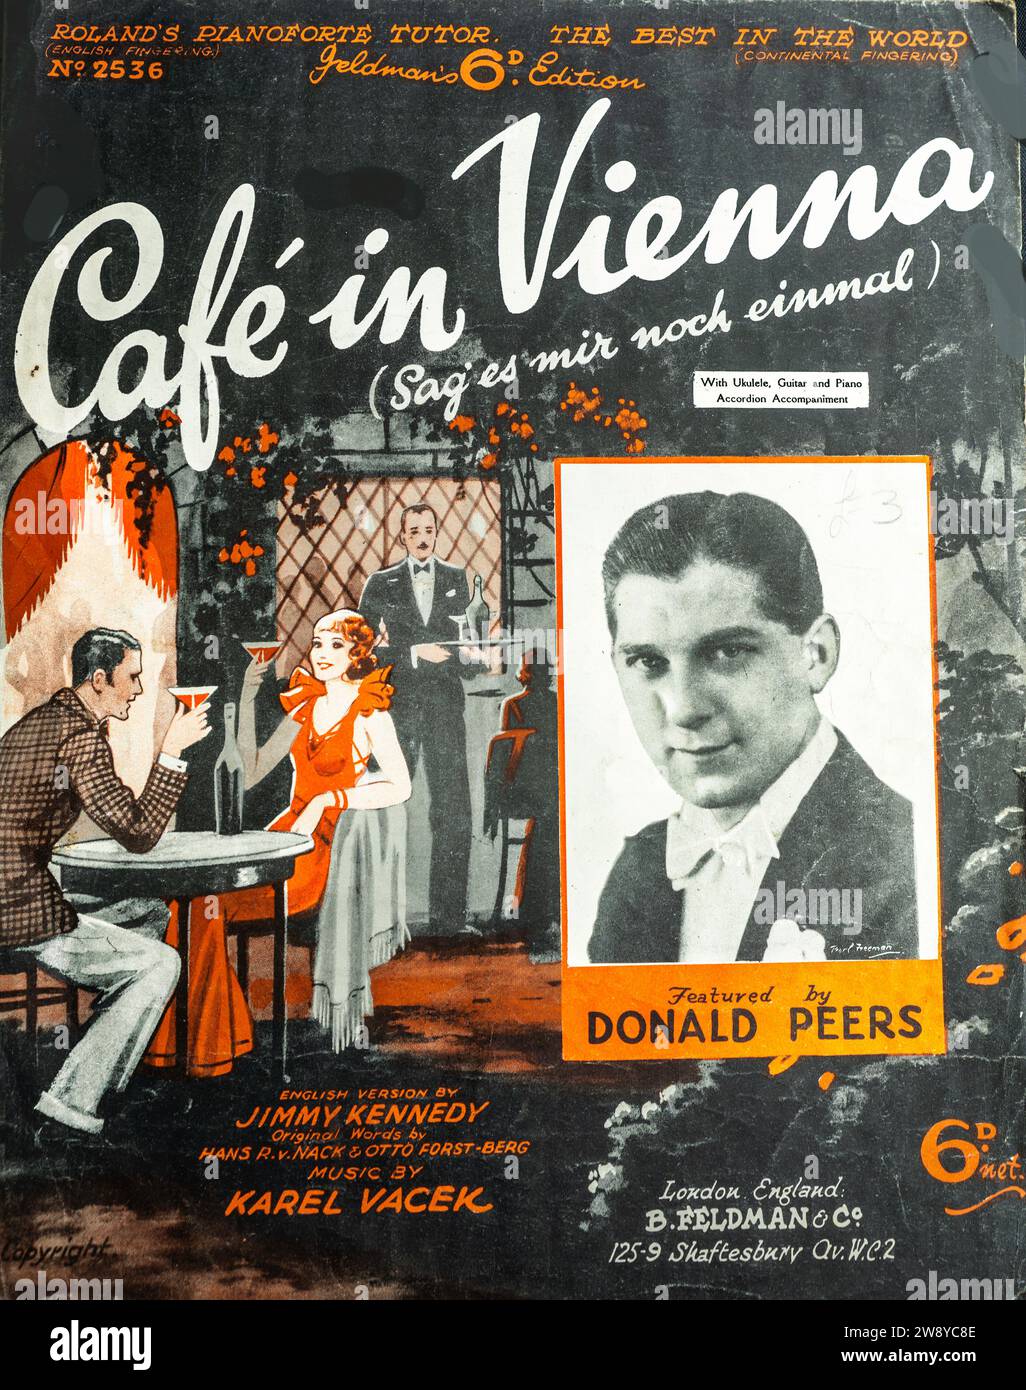 Notencover für „Café in Vienna“ aus den 1930er Jahren mit Kunst und einem Foto von Donald Peers. Stockfoto